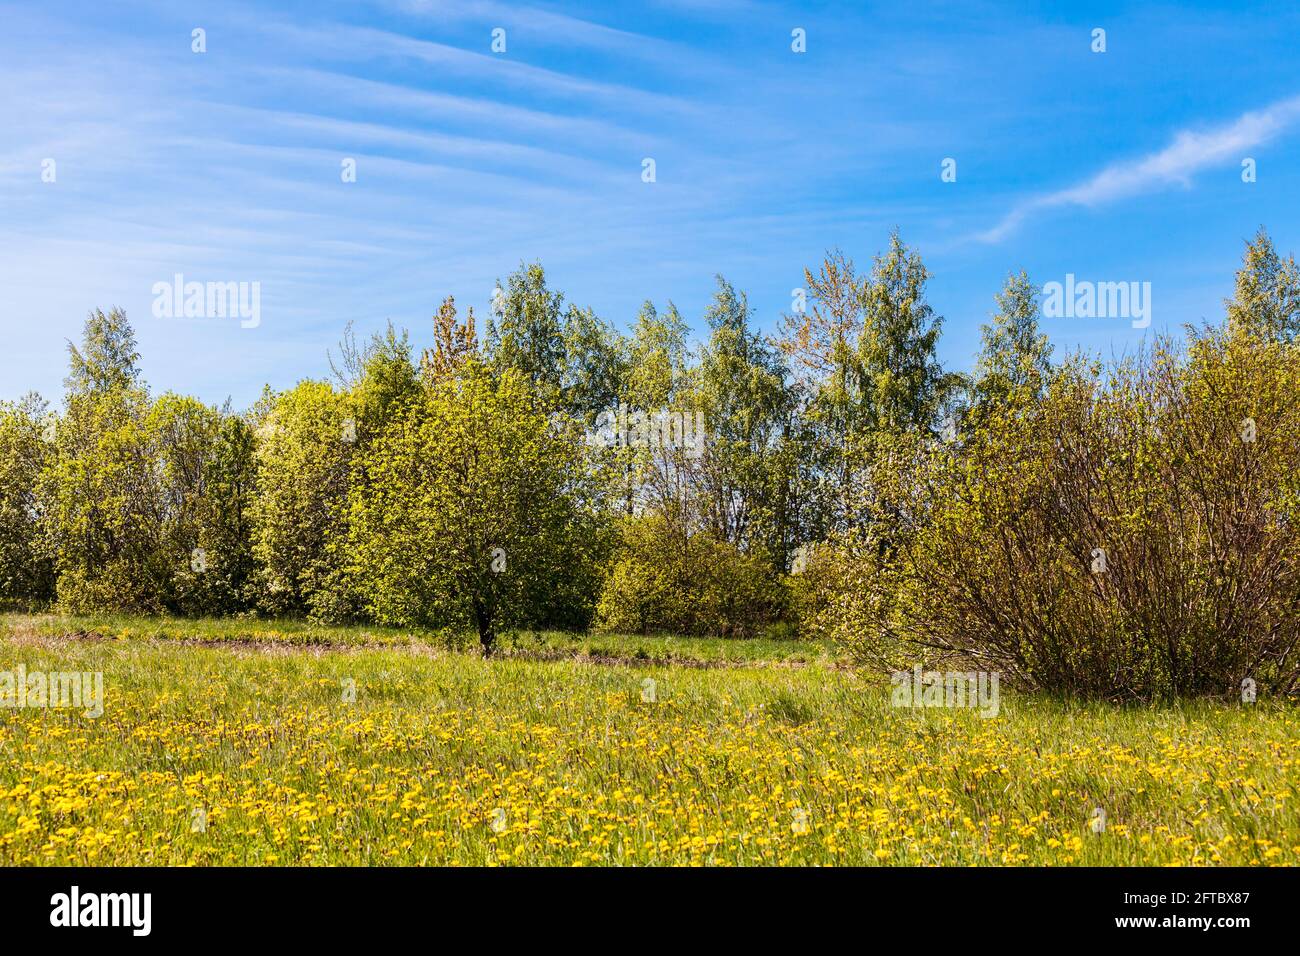 Ländliche Landschaft mit Sommerbäumen und Sträuchern unter wolkenblauem Himmel an einem sonnigen Tag, natürlicher Fotohintergrund Stockfoto